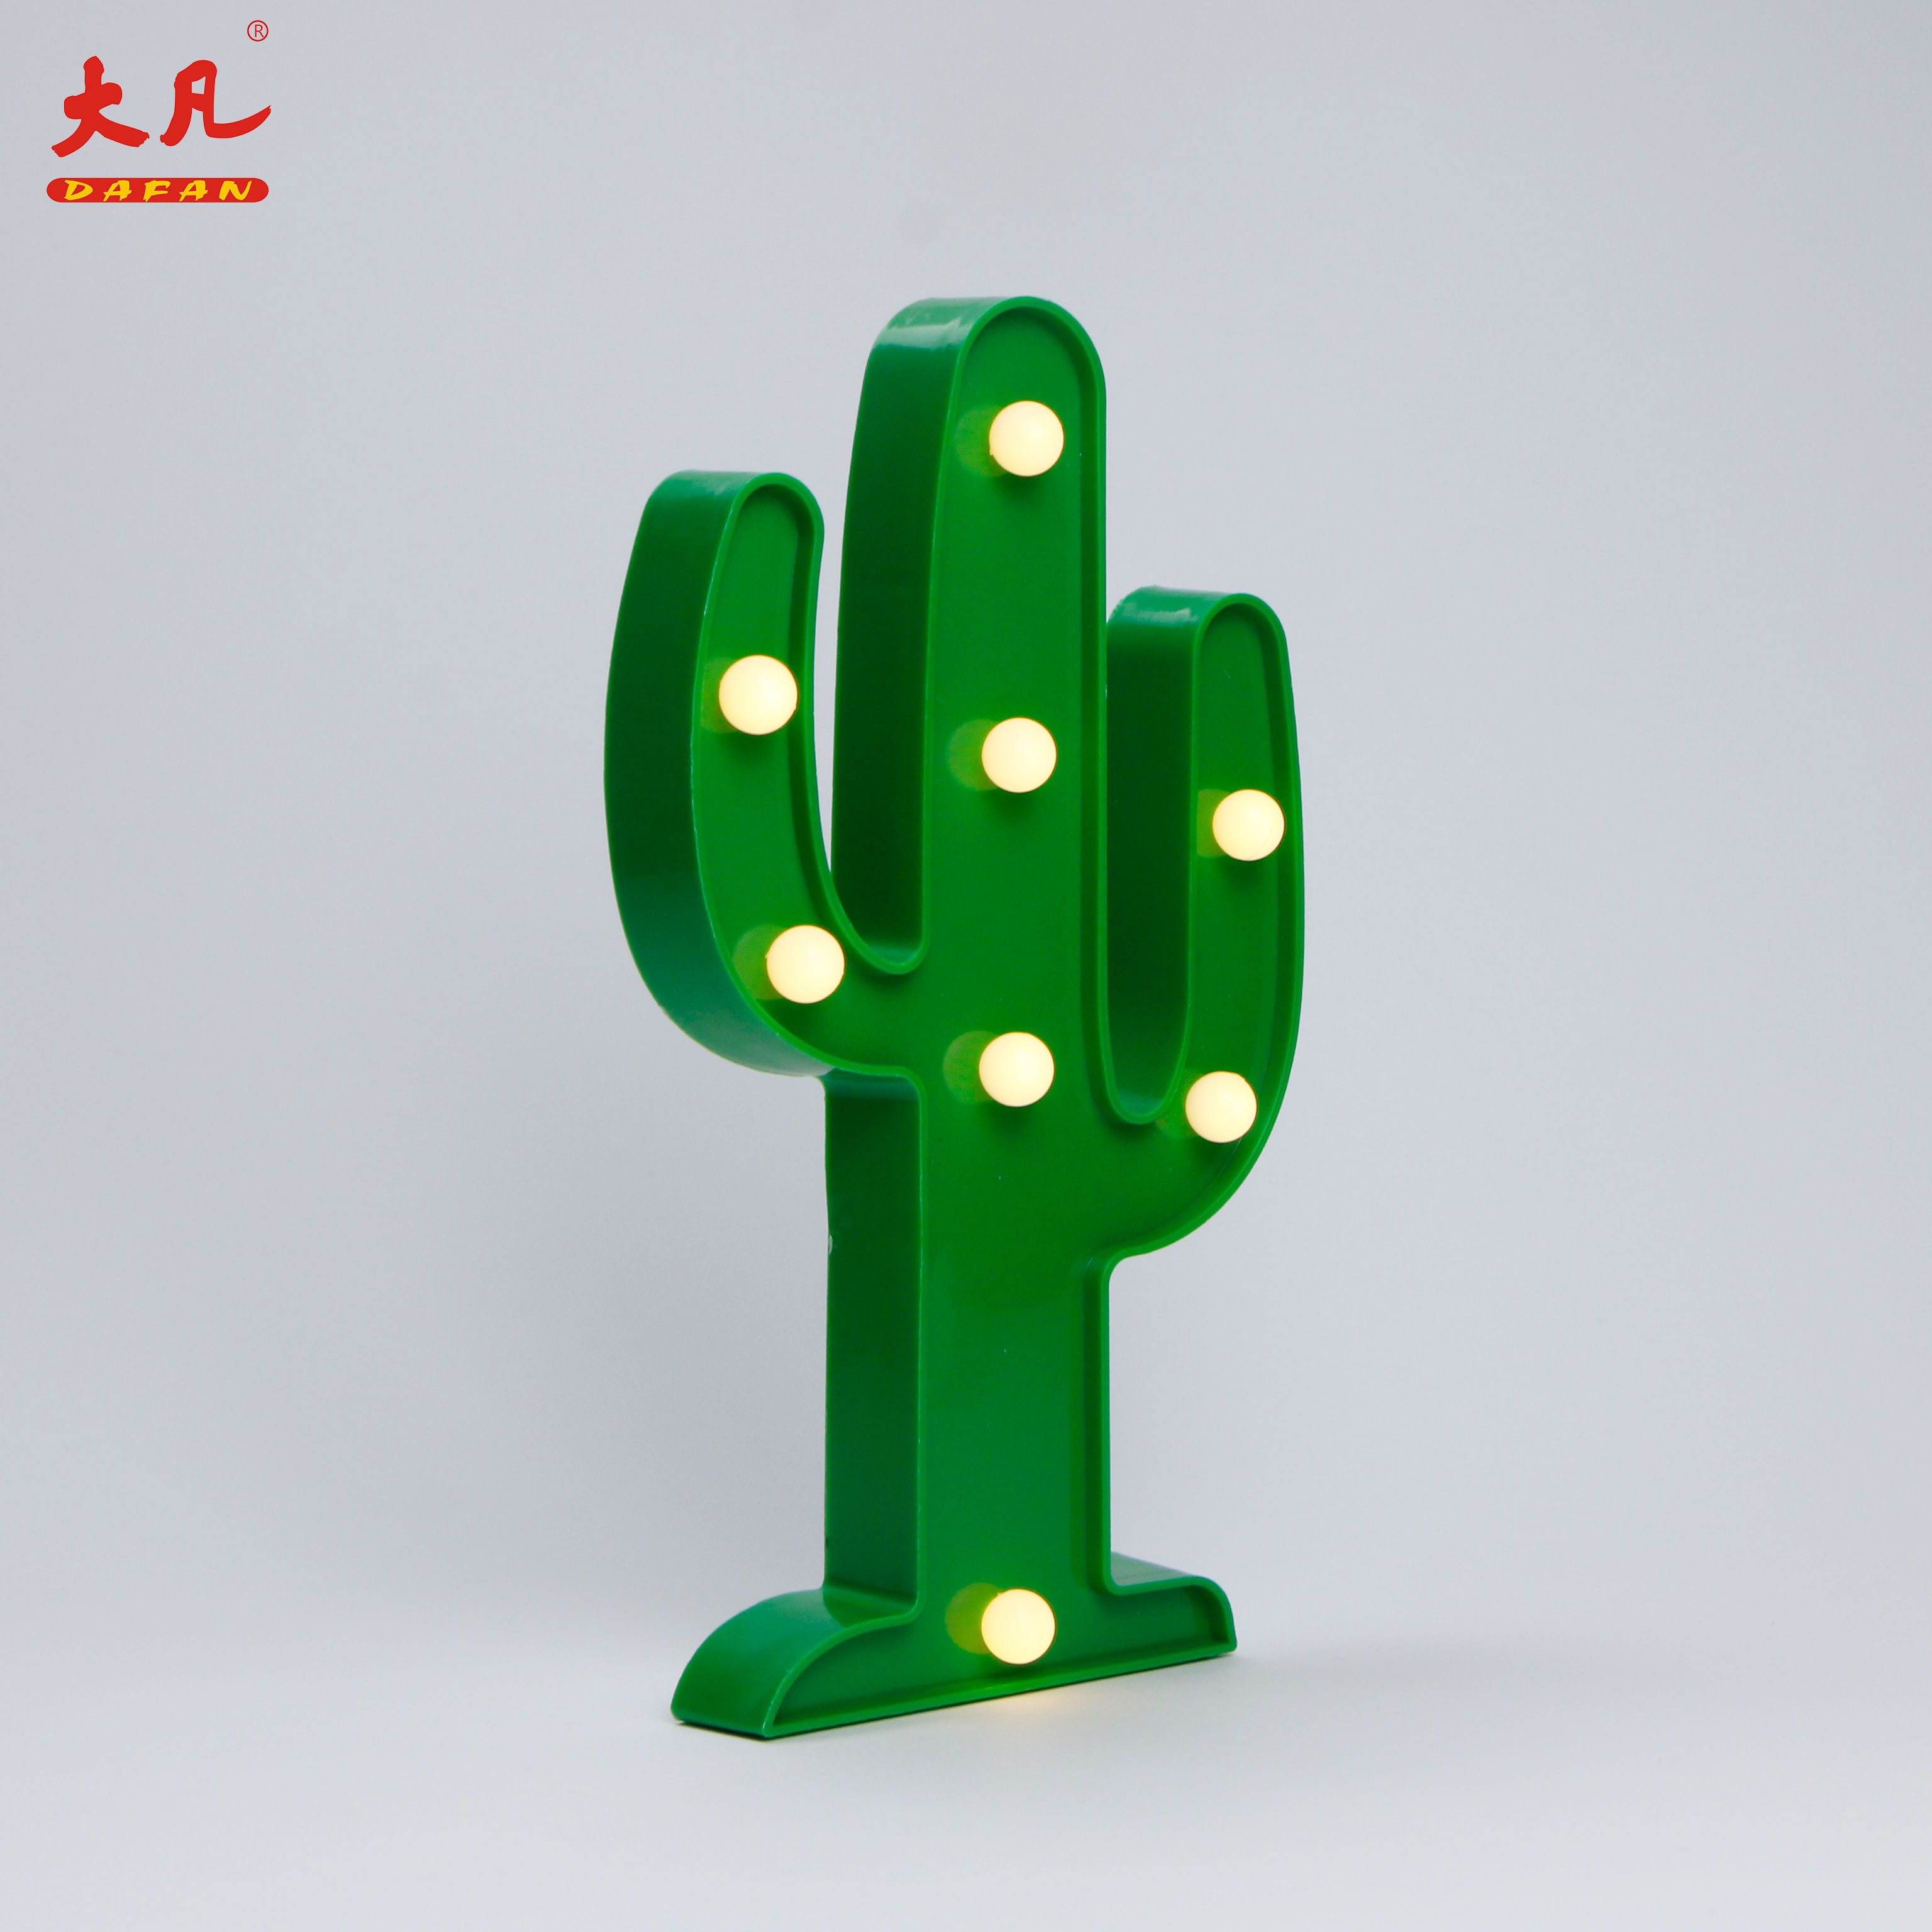 Cactus Christmas letter light design lamp led plastic light marquee plastic bulkhead light lighting led